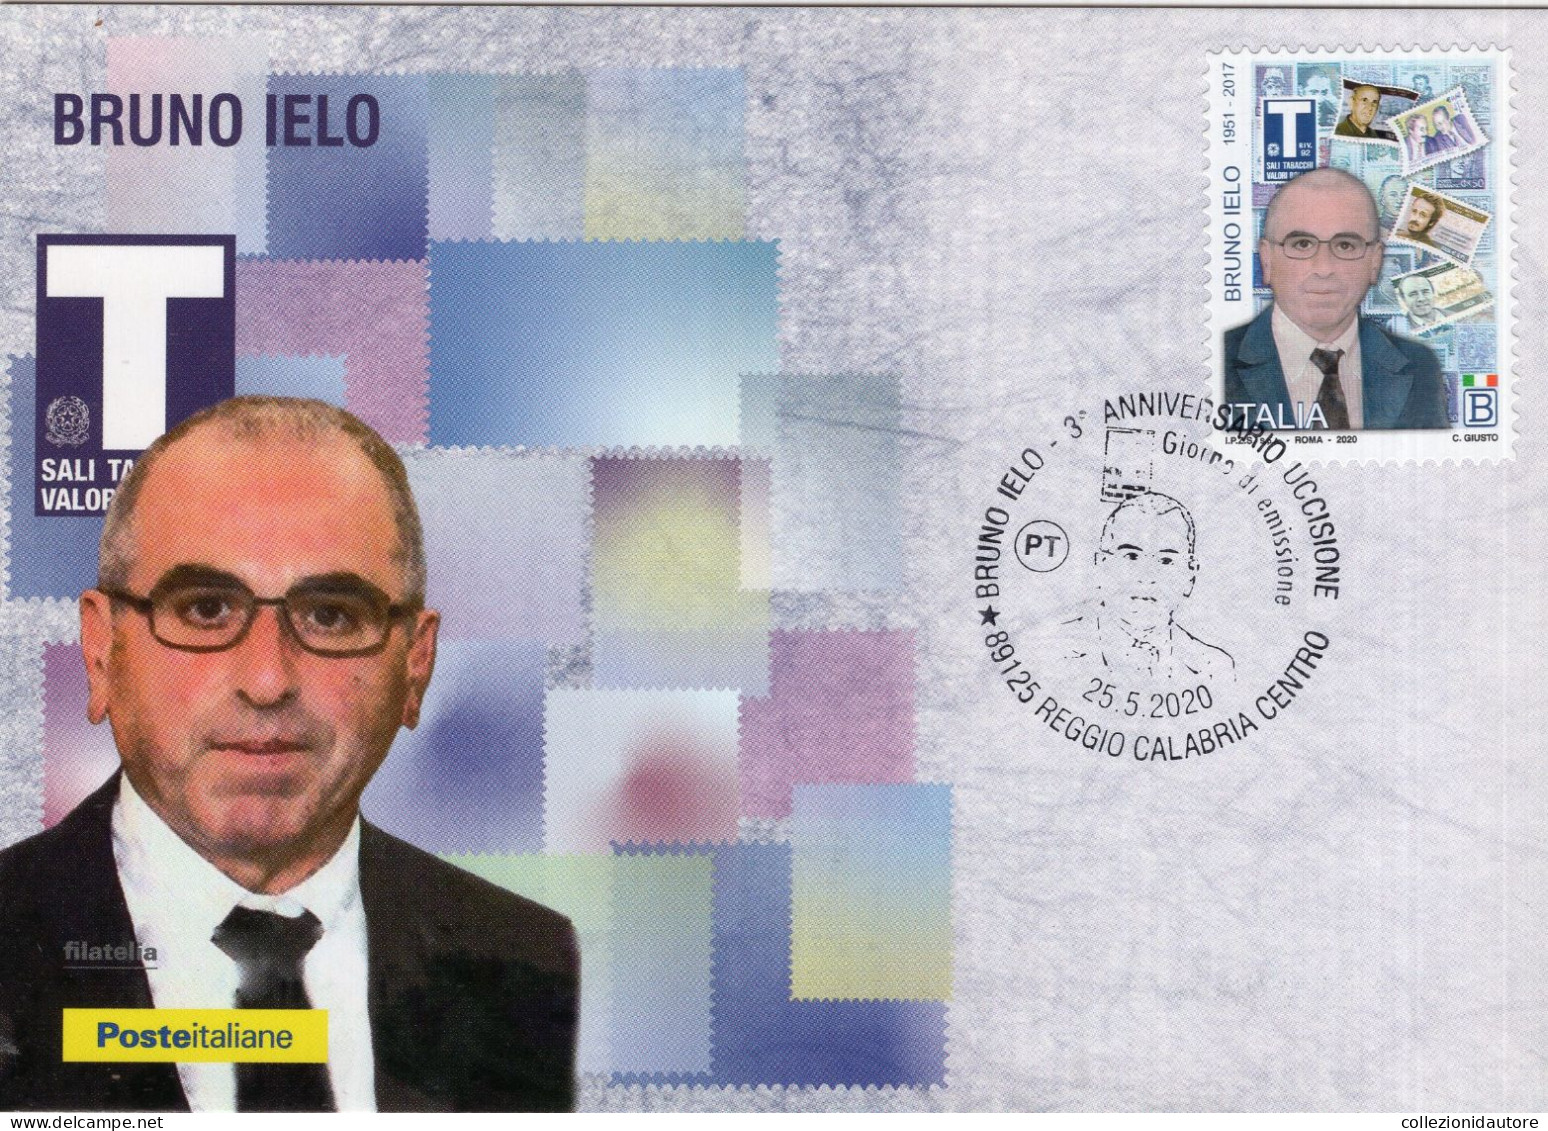 POSTE ITALIANE - FILATELIA - IL SENSO CIVICO - 3° ANNIVERSARIO UCCISIONE BRUNO IELO -  CARTOLINA AFFRANCATA ANNULLI 2020 - Postal Services